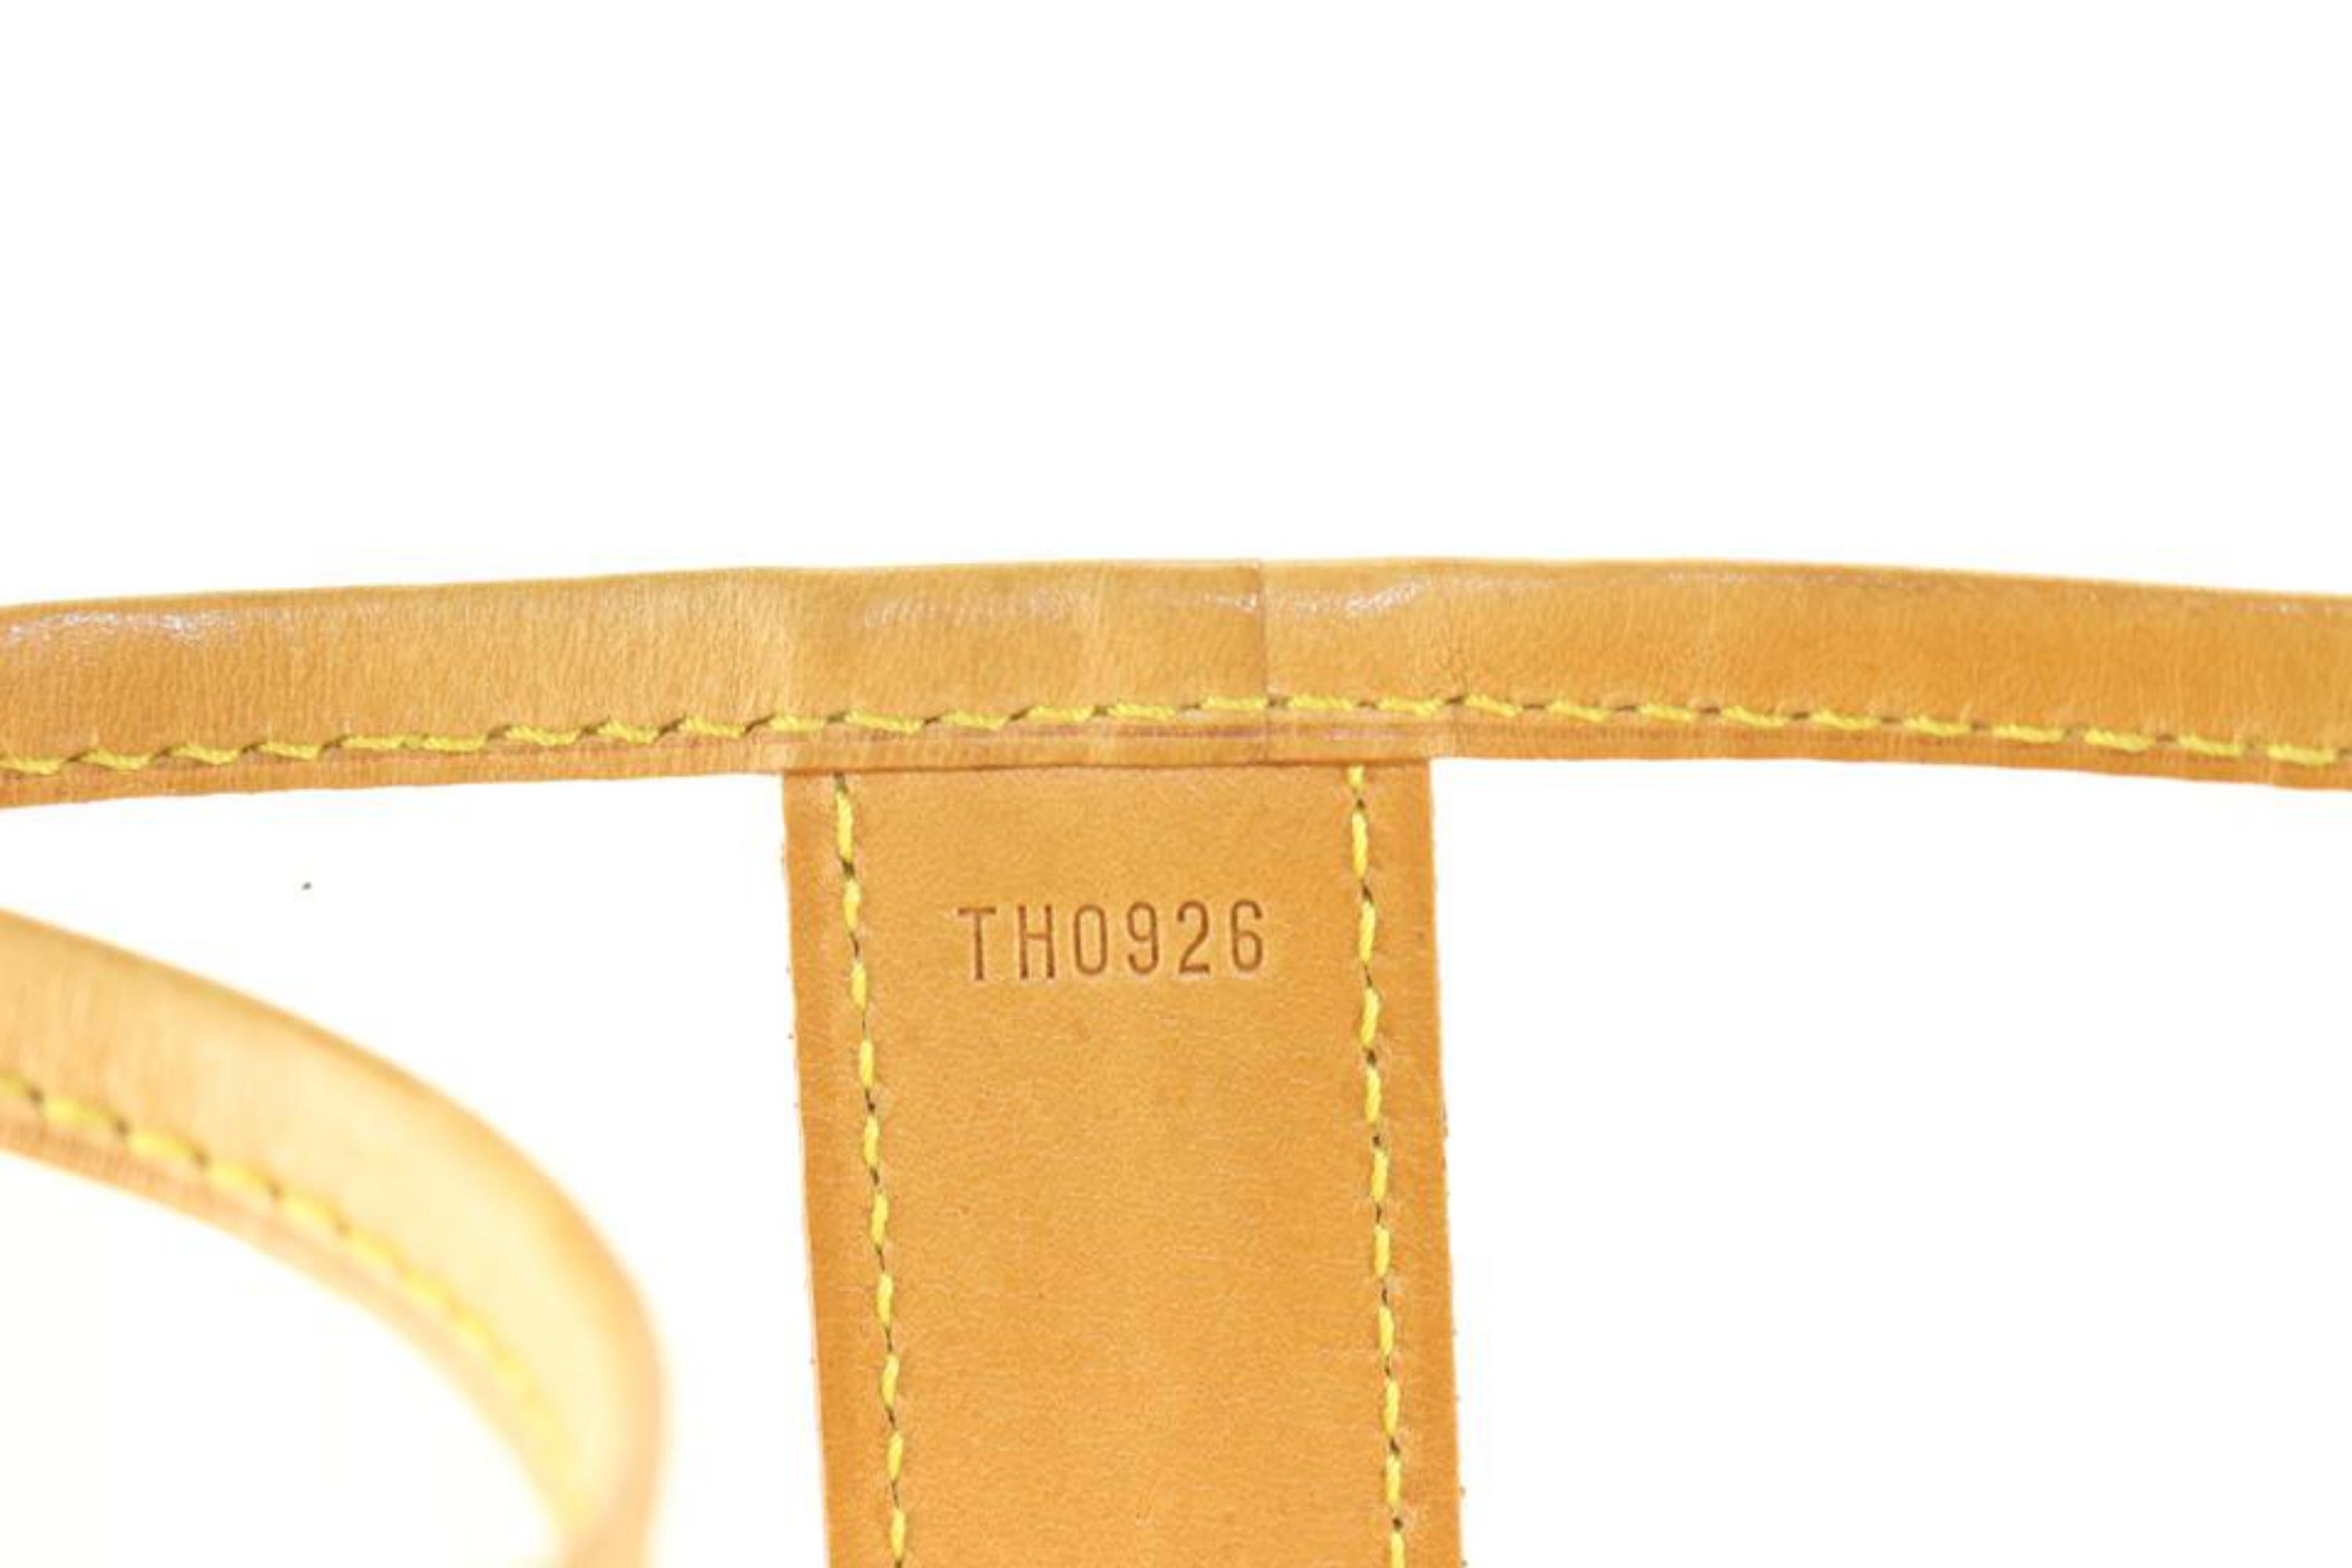 Louis Vuitton Runway 100th Anniversary Isaac Mizrahi 1996 Clear Tote Bag 18lu720 For Sale 2